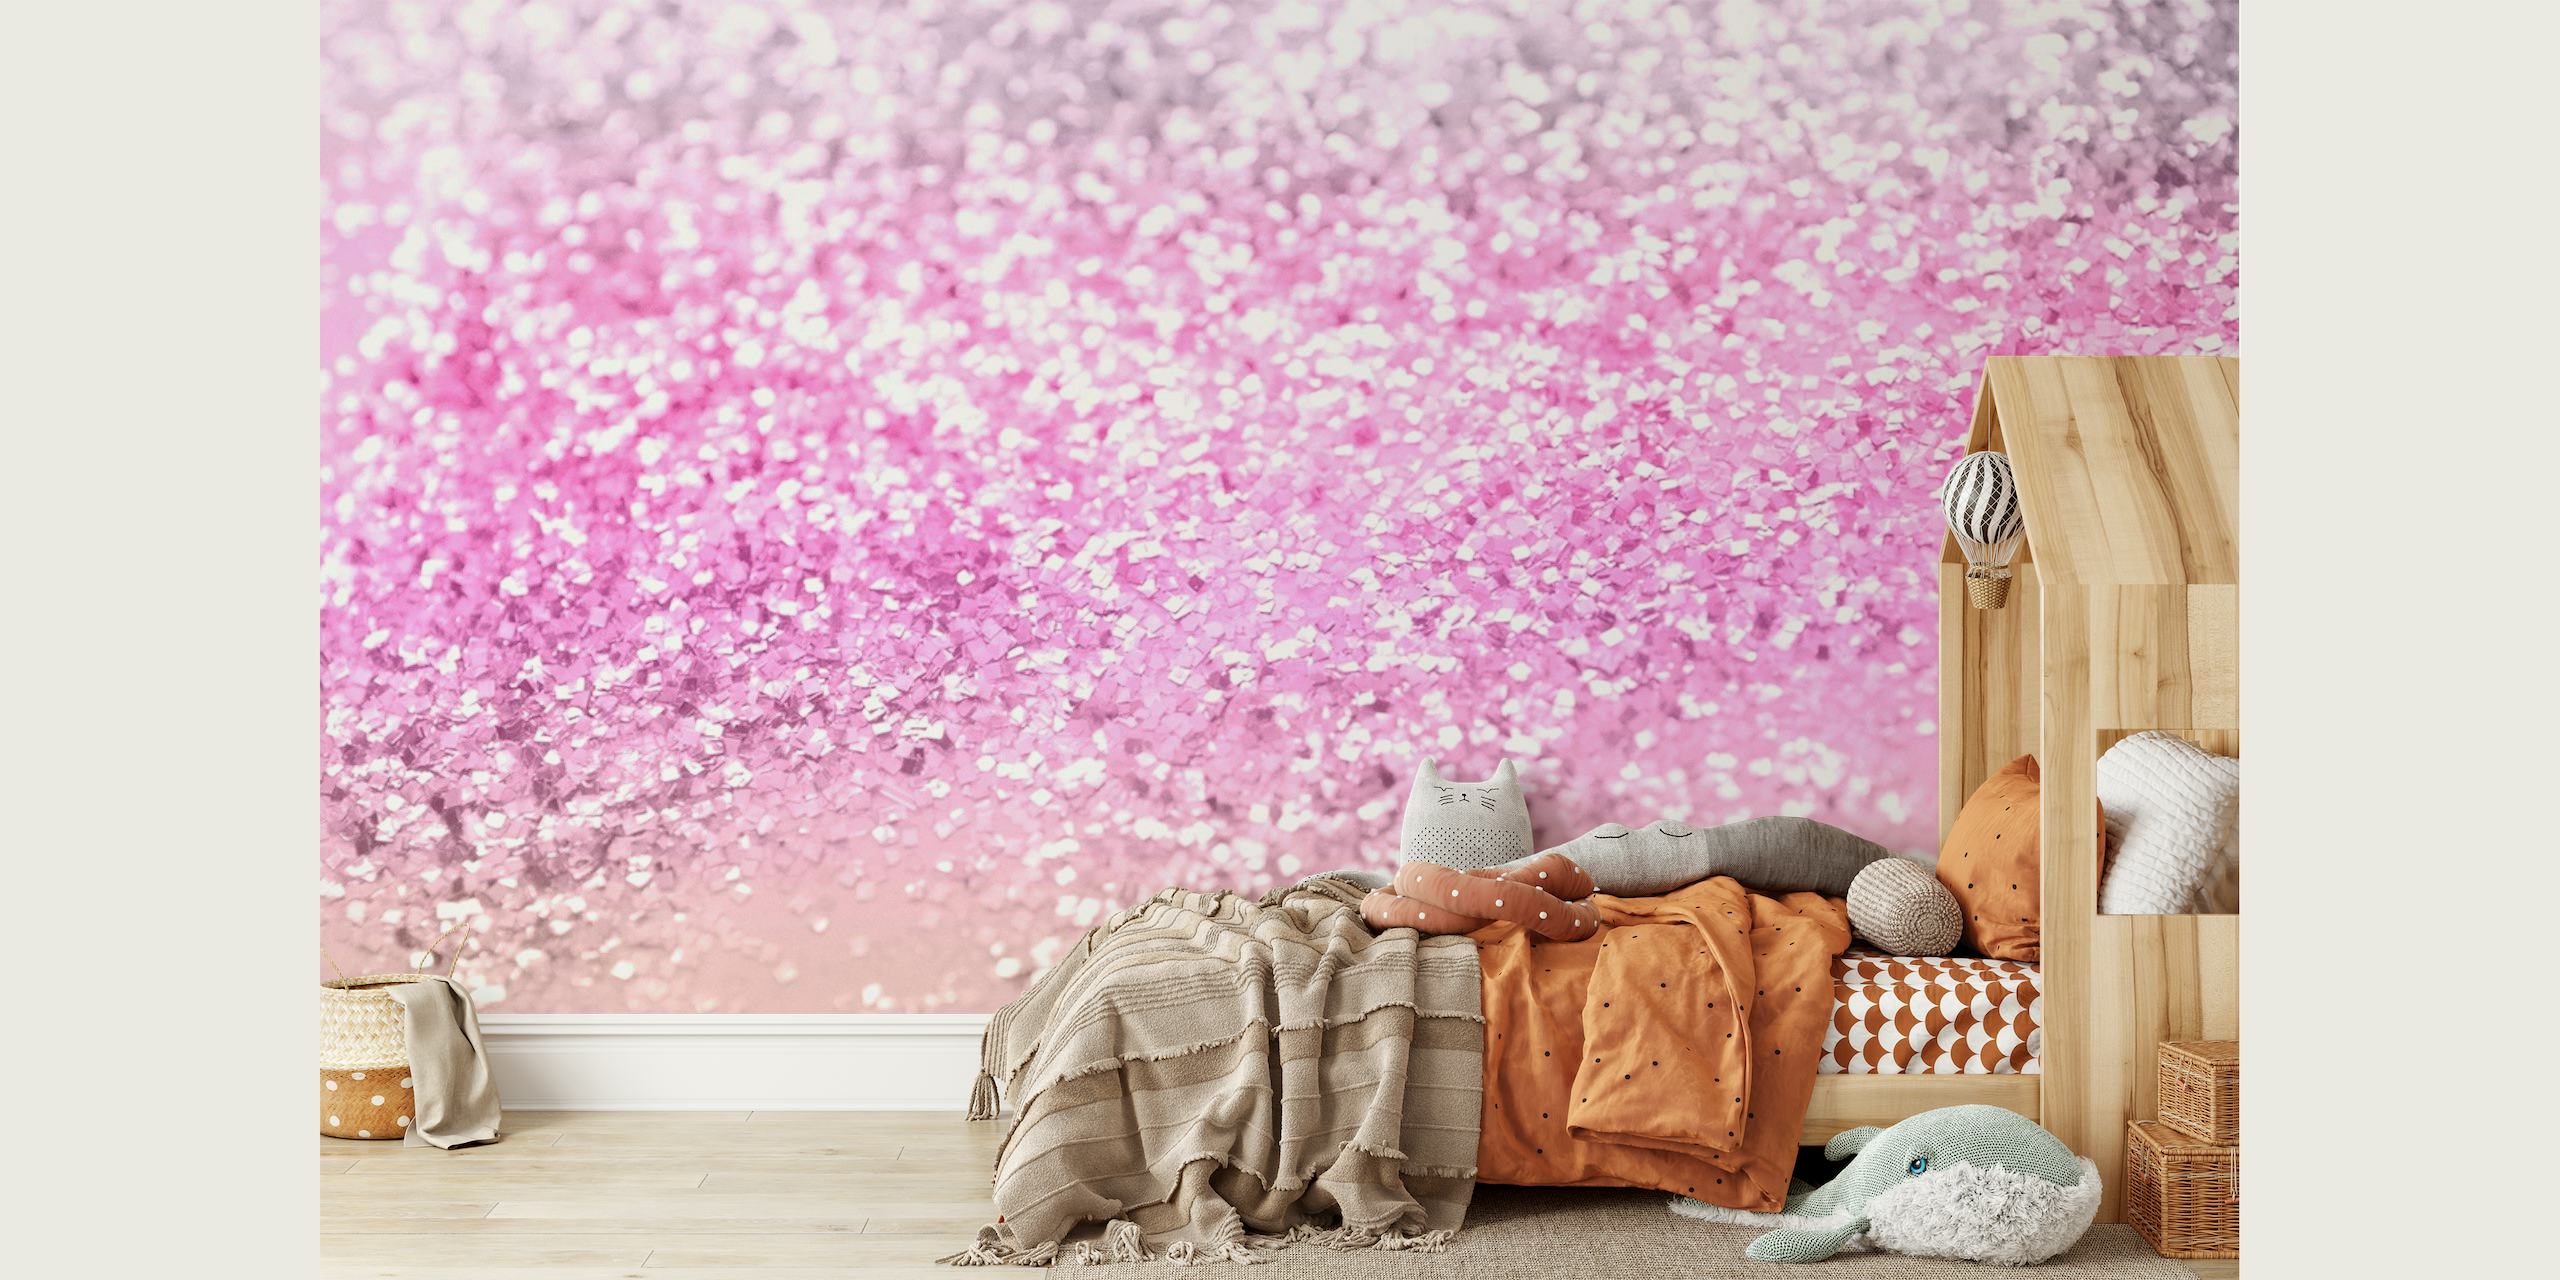 Väggmålning med glittergradient i rosa och silver för ett magiskt rumstema